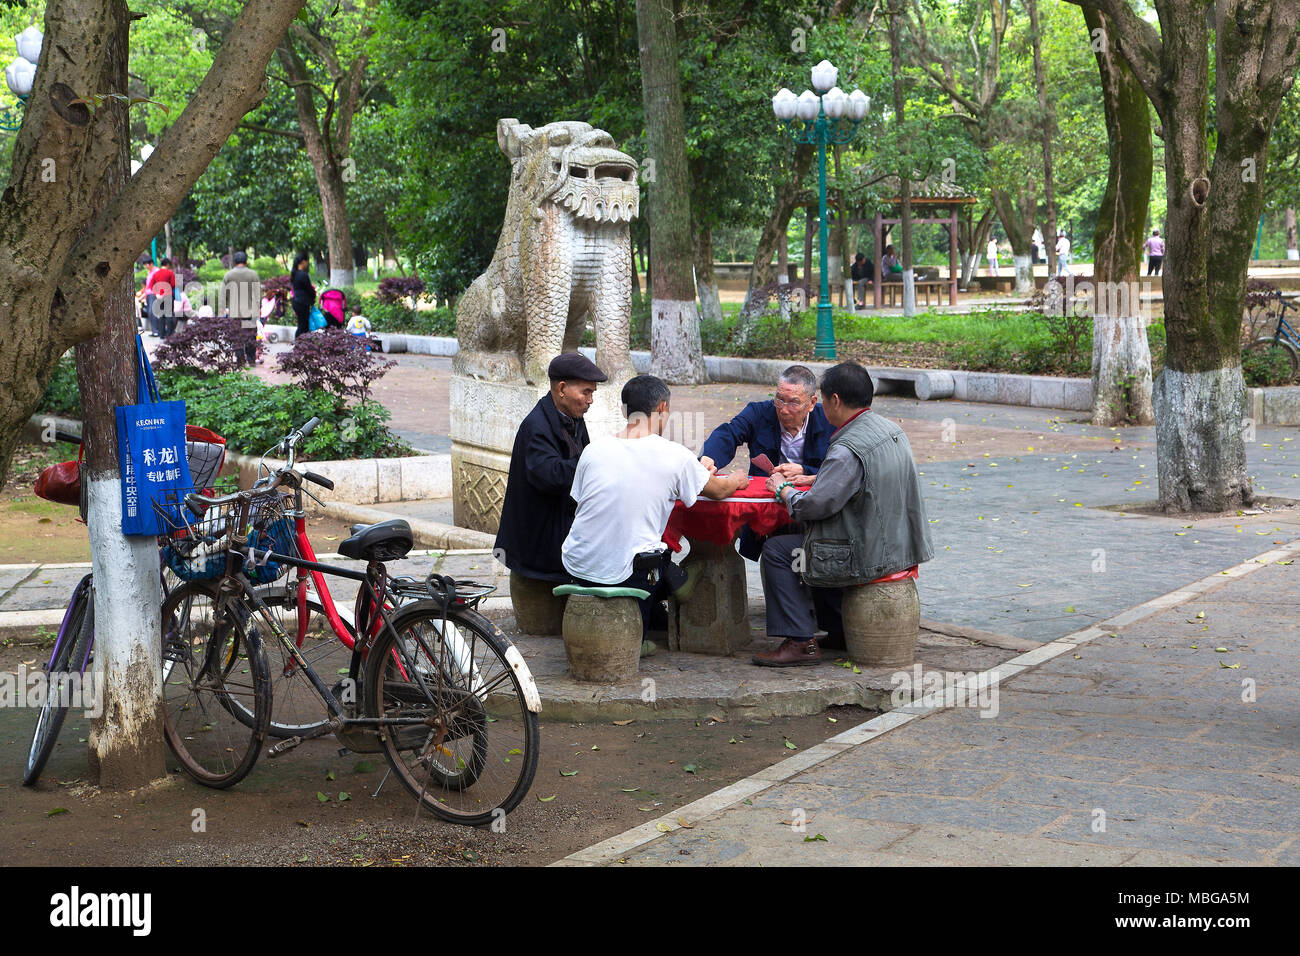 Quatre hommes chinois s'asseoir cartes à jouer dans le parc de Yangshuo, Chine. Leurs bicyclettes reste contre un arbre. Derrière un lion gardien chinois pierre monte la garde. Banque D'Images